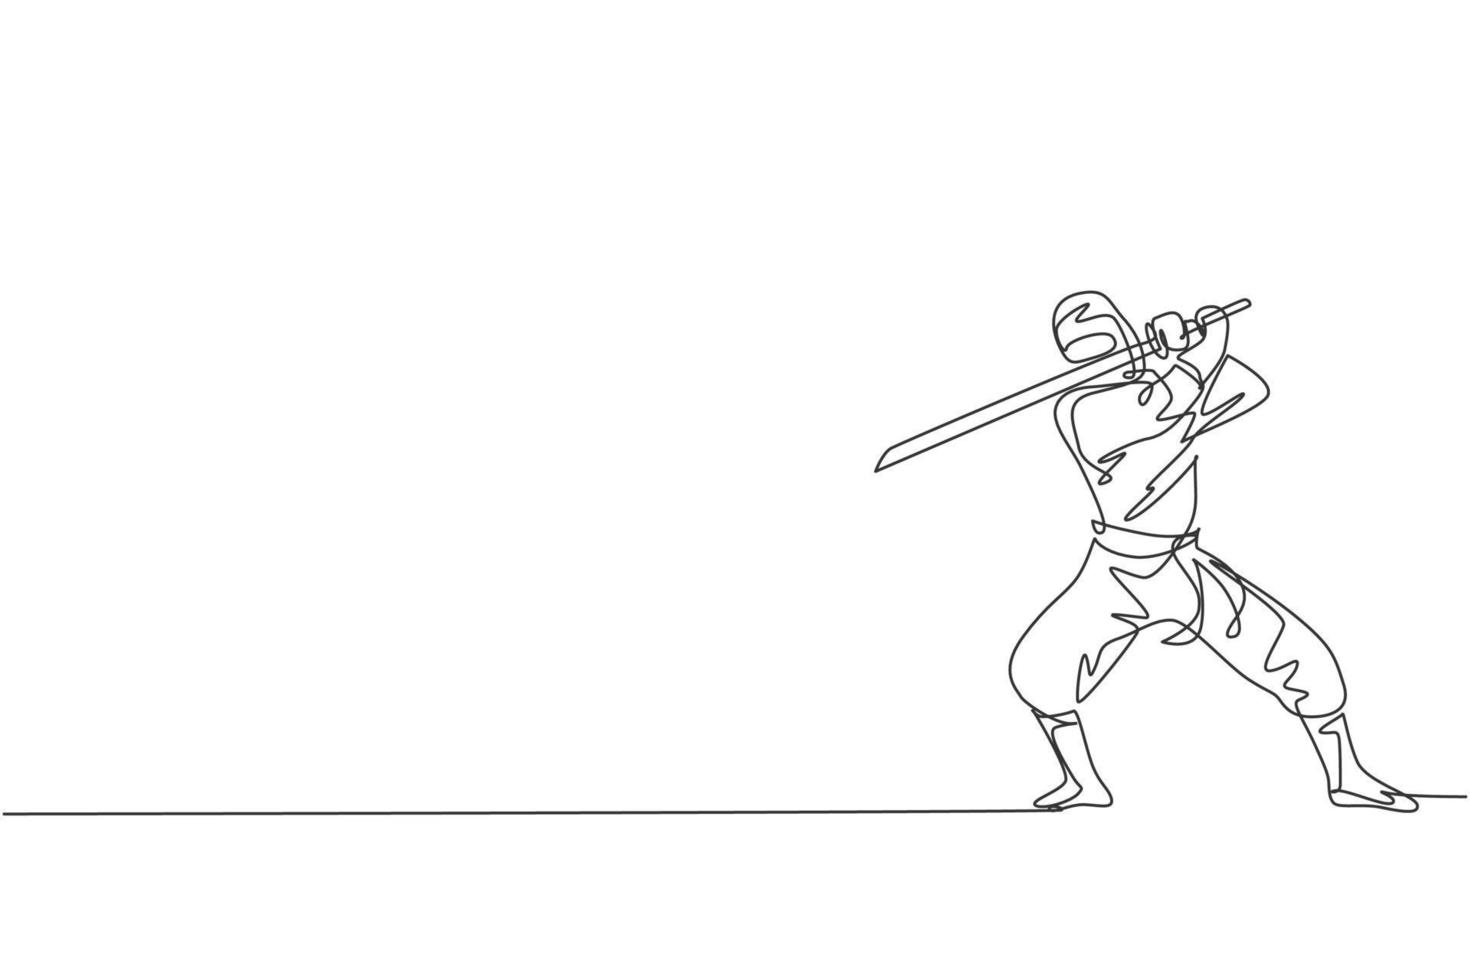 un disegno a linea continua di un giovane ninja coraggioso giapponese su costume nero con posizione di attacco. concetto di combattimento di arte marziale. illustrazione grafica vettoriale di disegno dinamico a linea singola